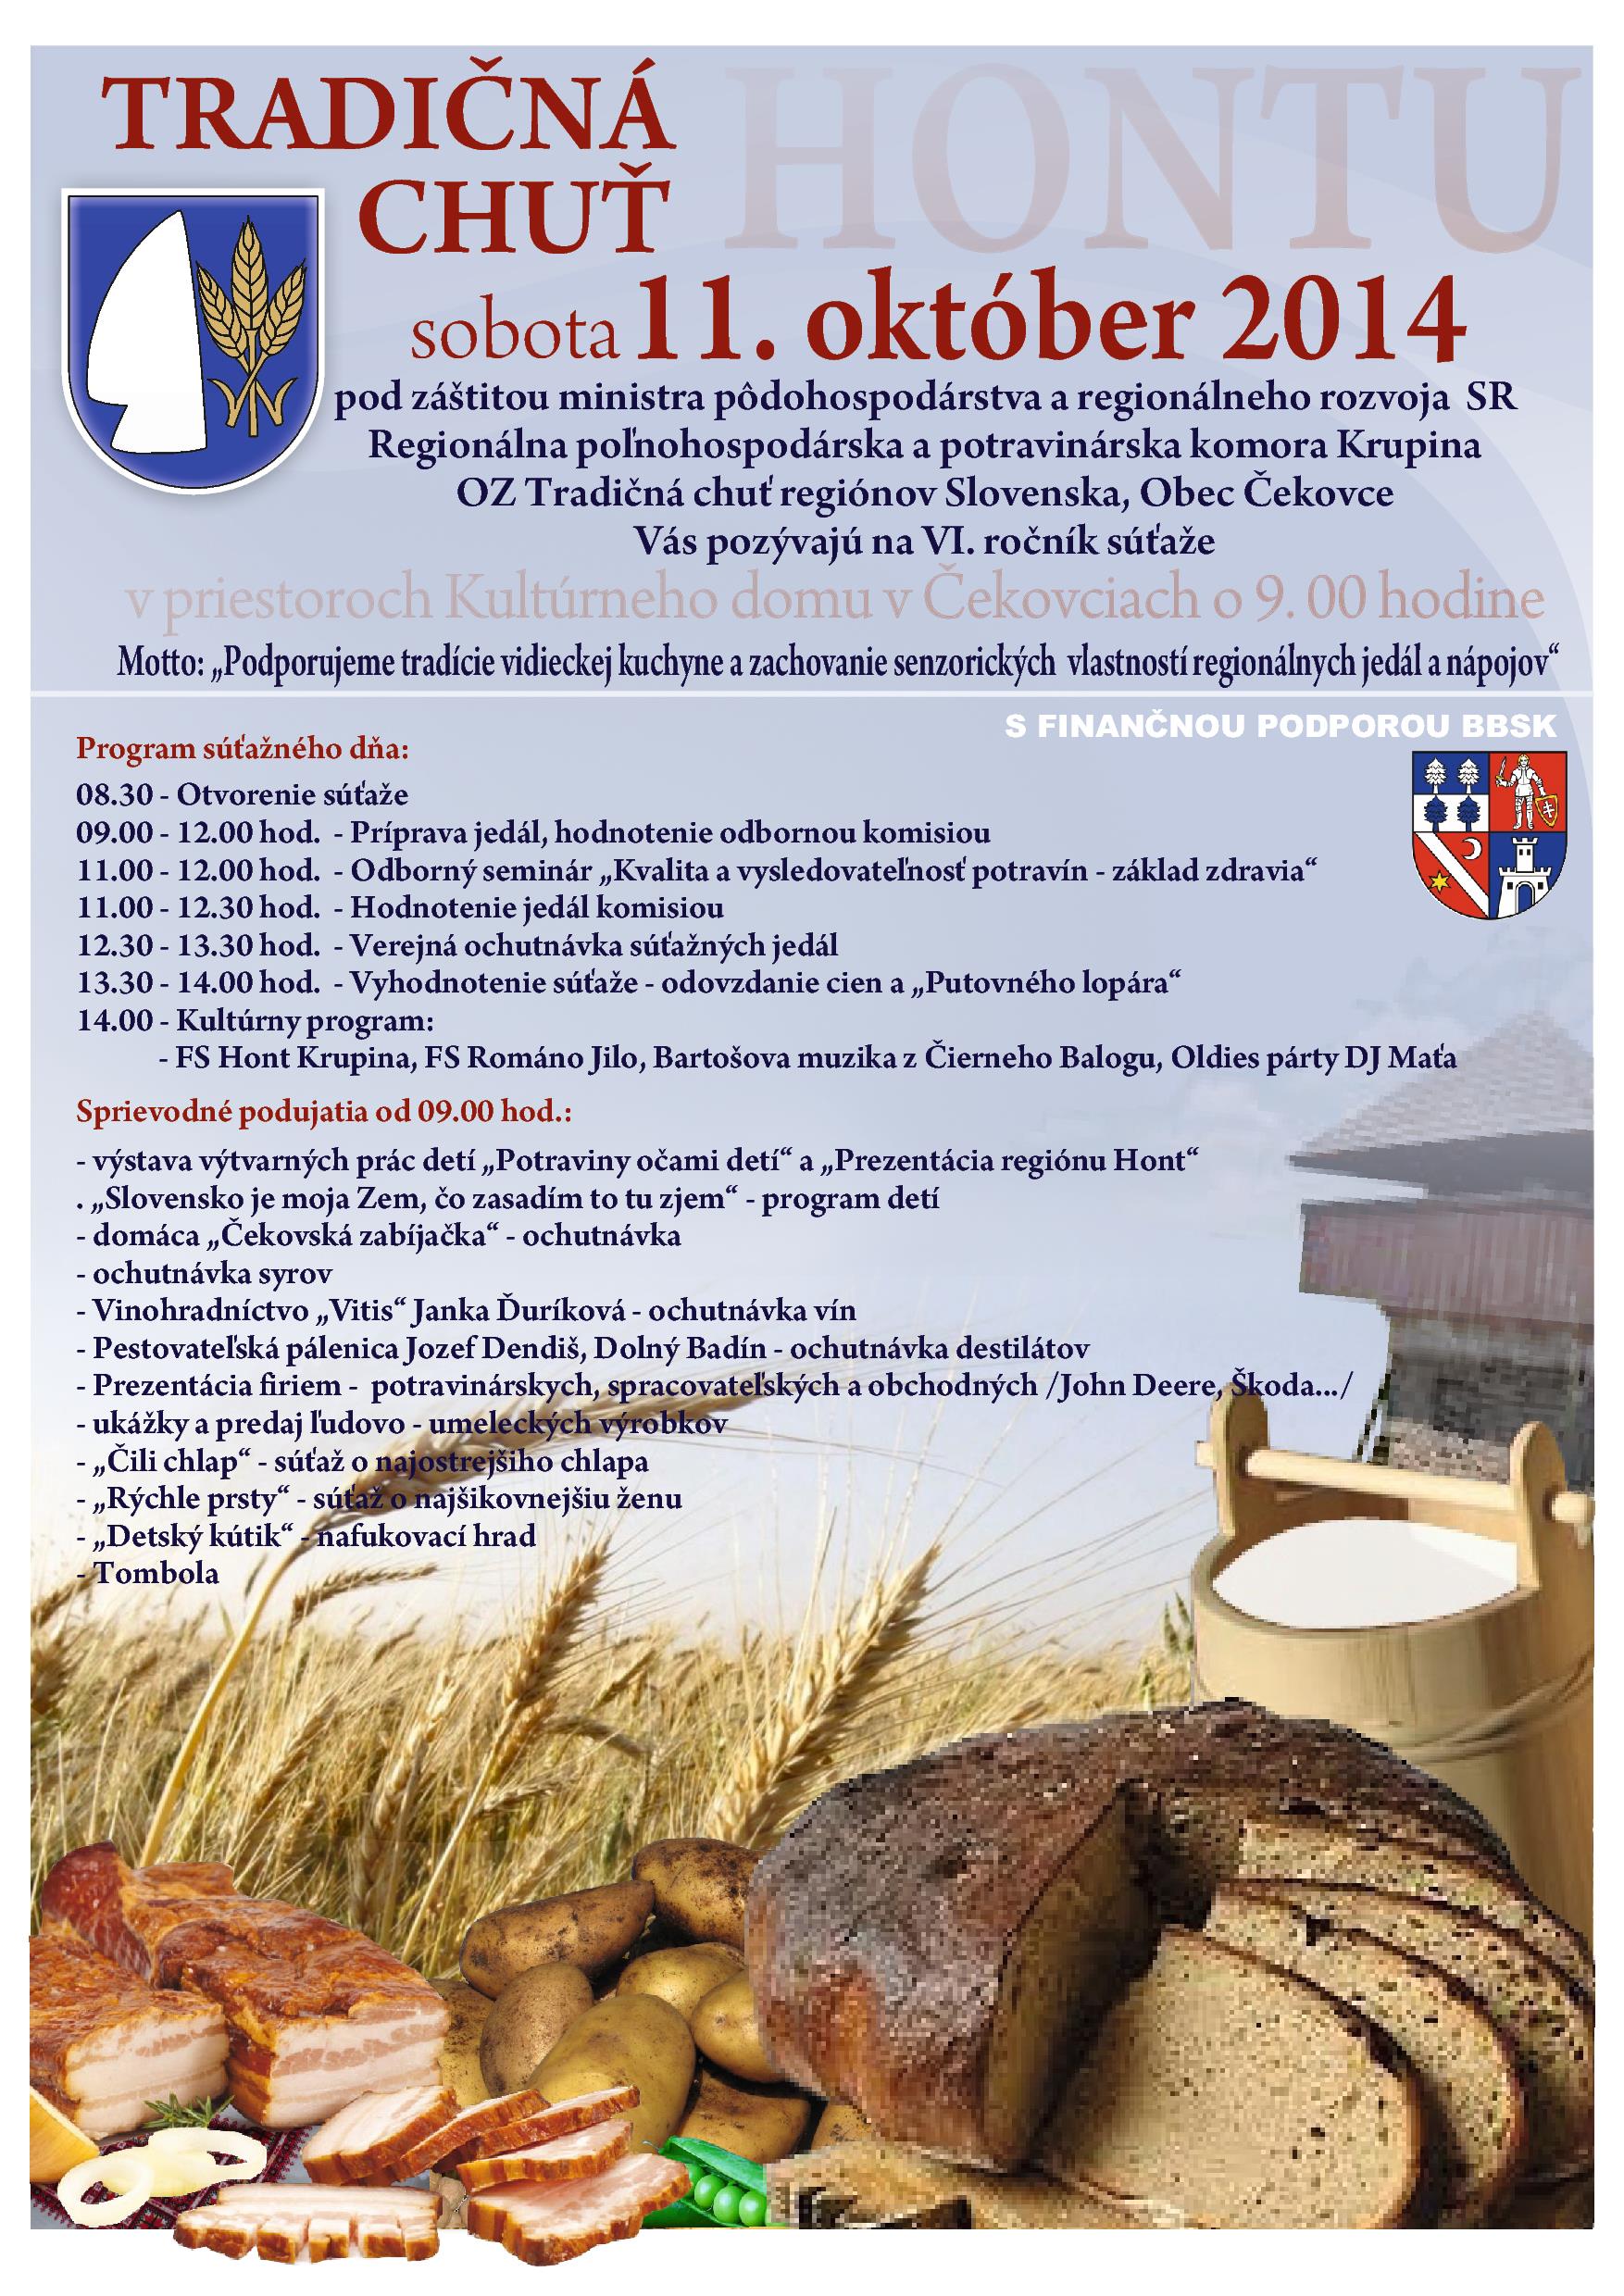 Tradičná chuť Hontu 2014 Čekovce - súťaž vo varení tradičných jedál z miestnych surovín